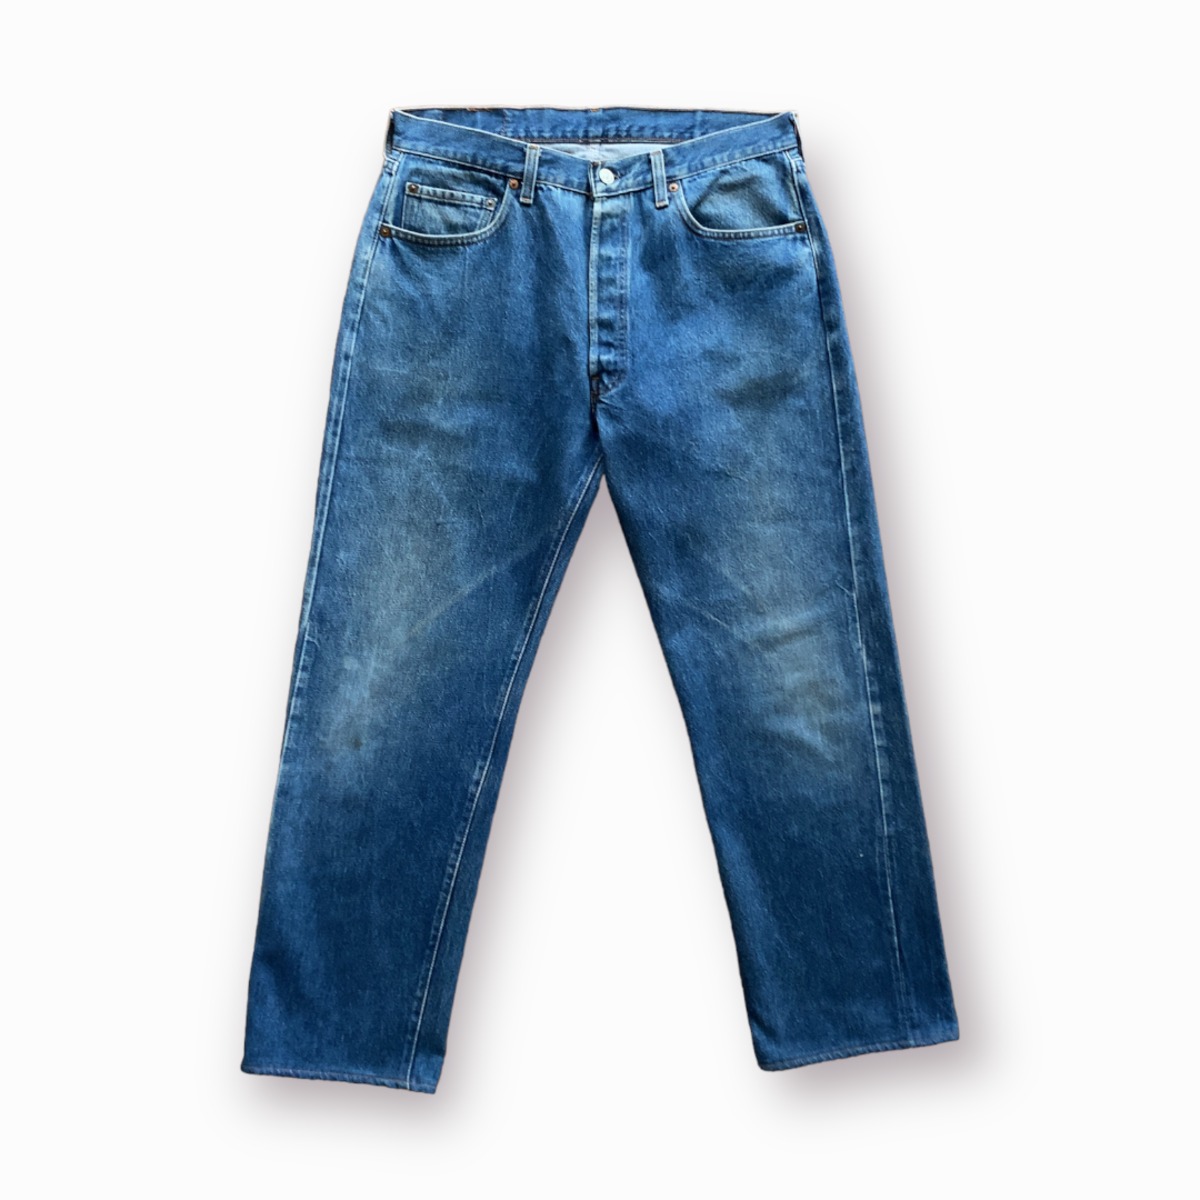 Levi's 501 / 80's Vintage Denim Pants 